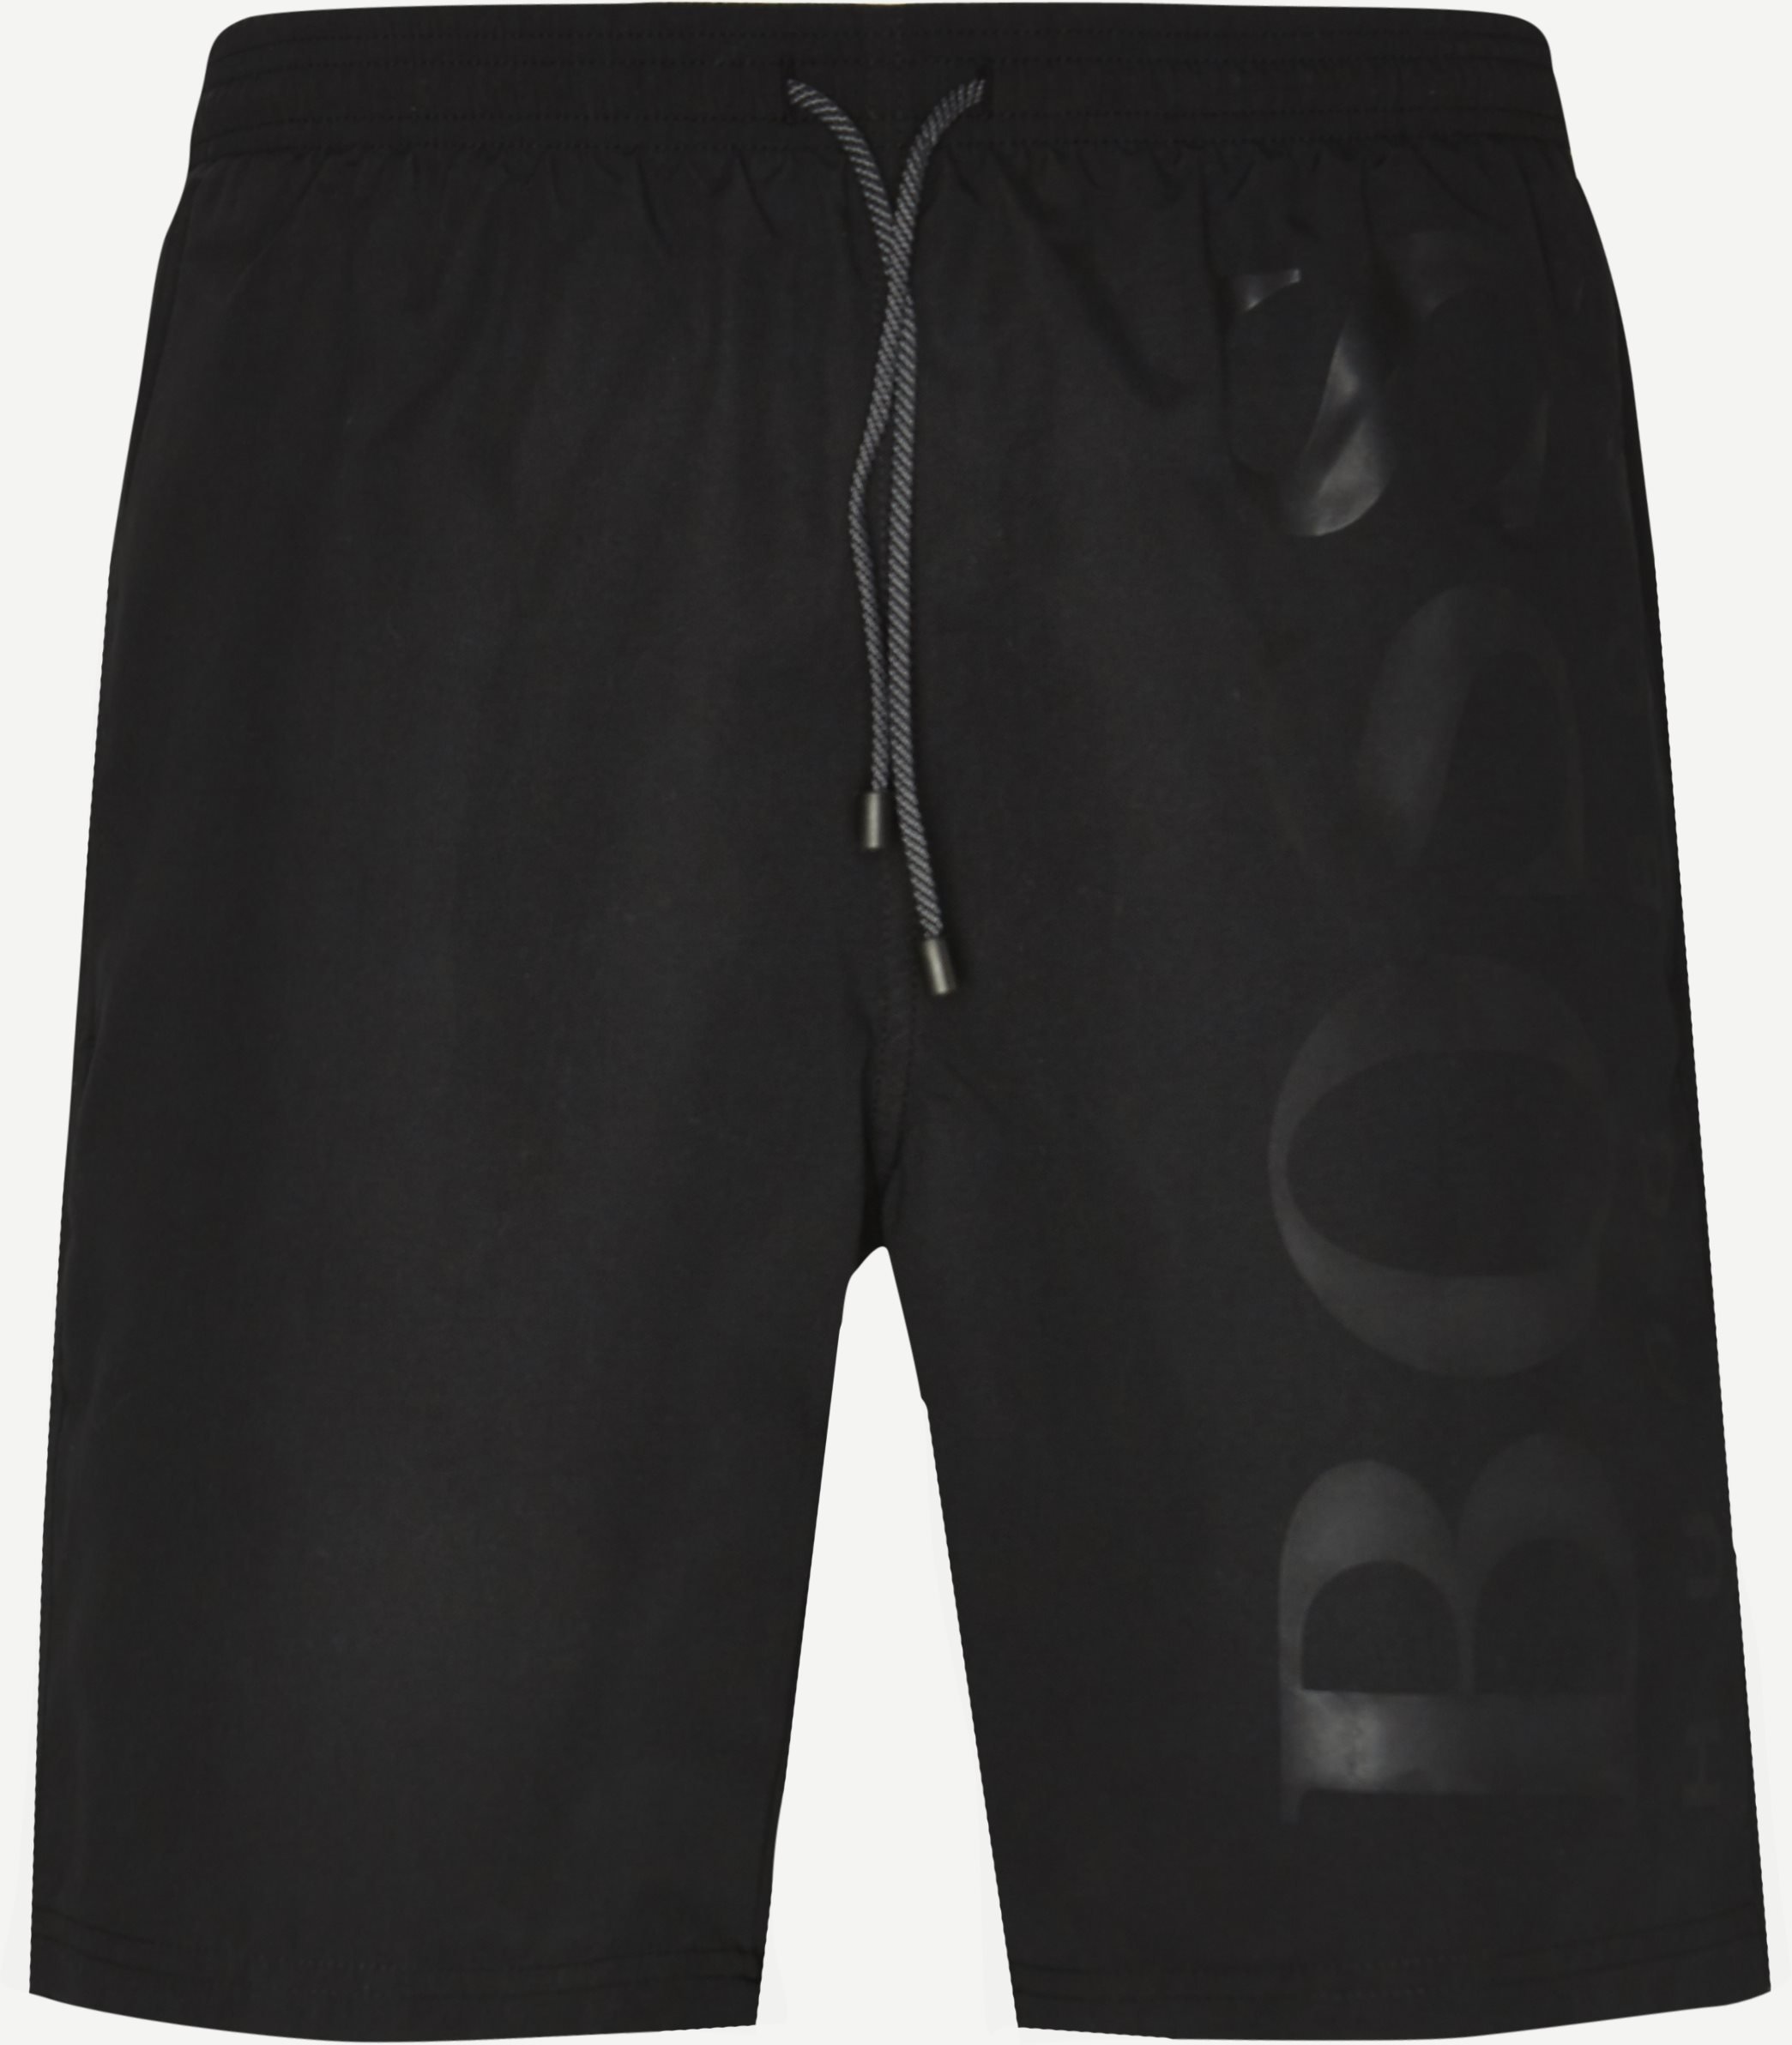 Orca Badeshorts - Shorts - Regular fit - Sort